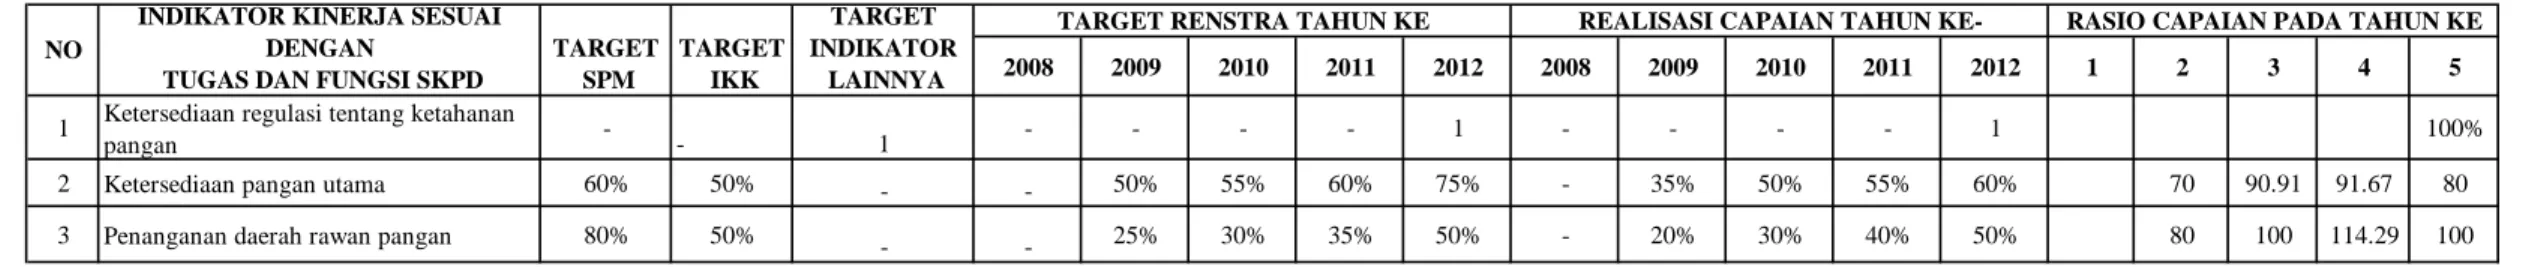 Tabel 2.5 Pencapaian Kinerja Badan Ketahanan Pangan Kab. Minahasa Tenggara Tahun 2009-2013